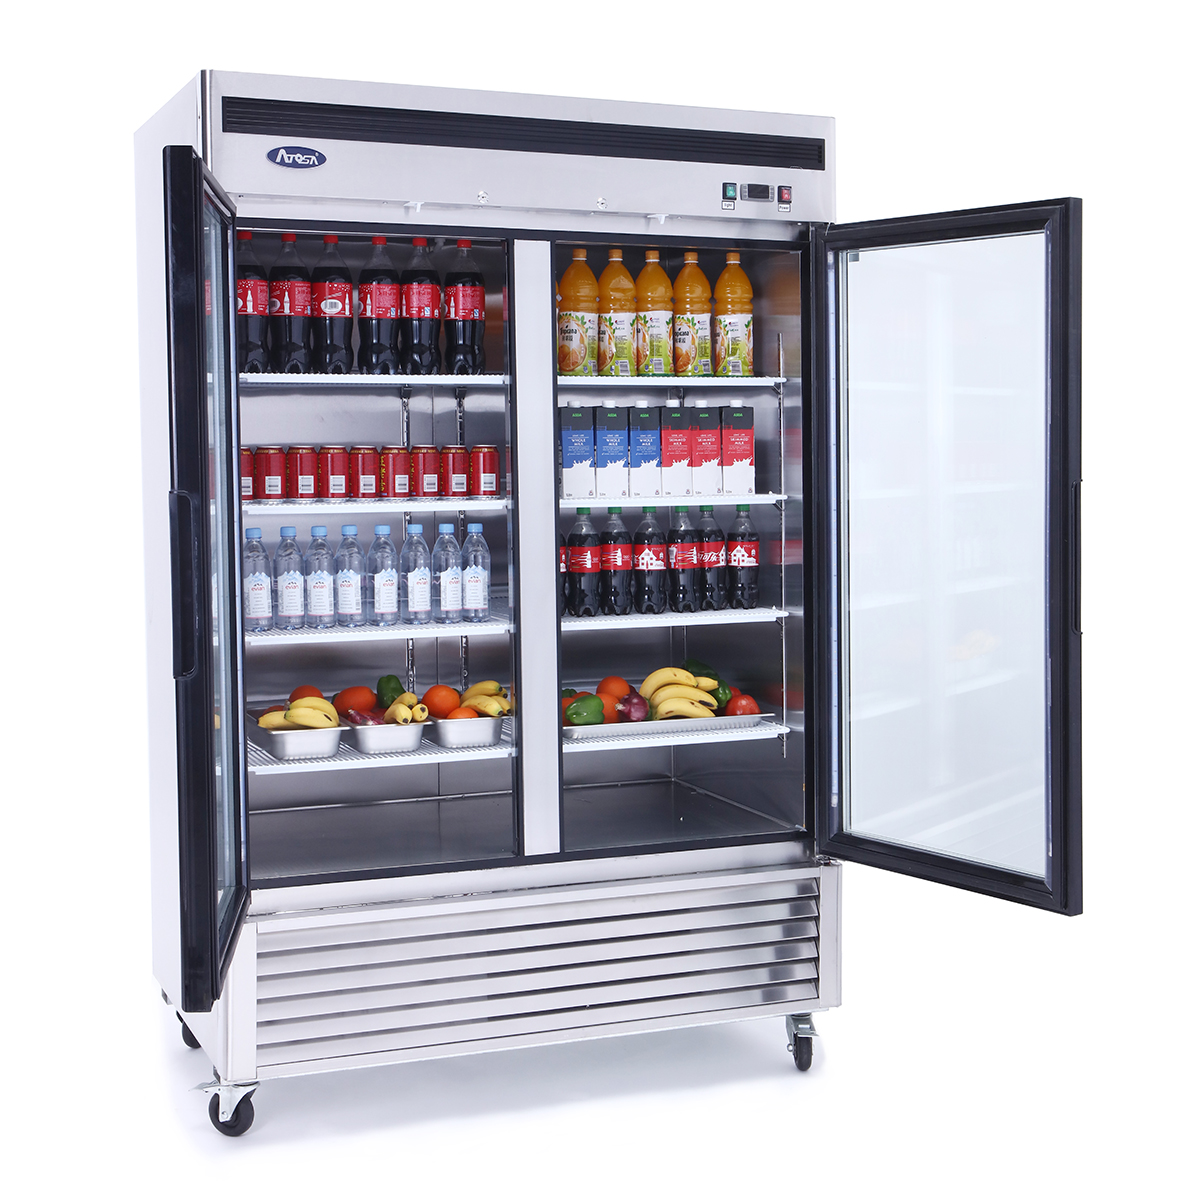 Atosa MCF8707GR Glass Door Merchandiser Refrigerator Series for sale online 